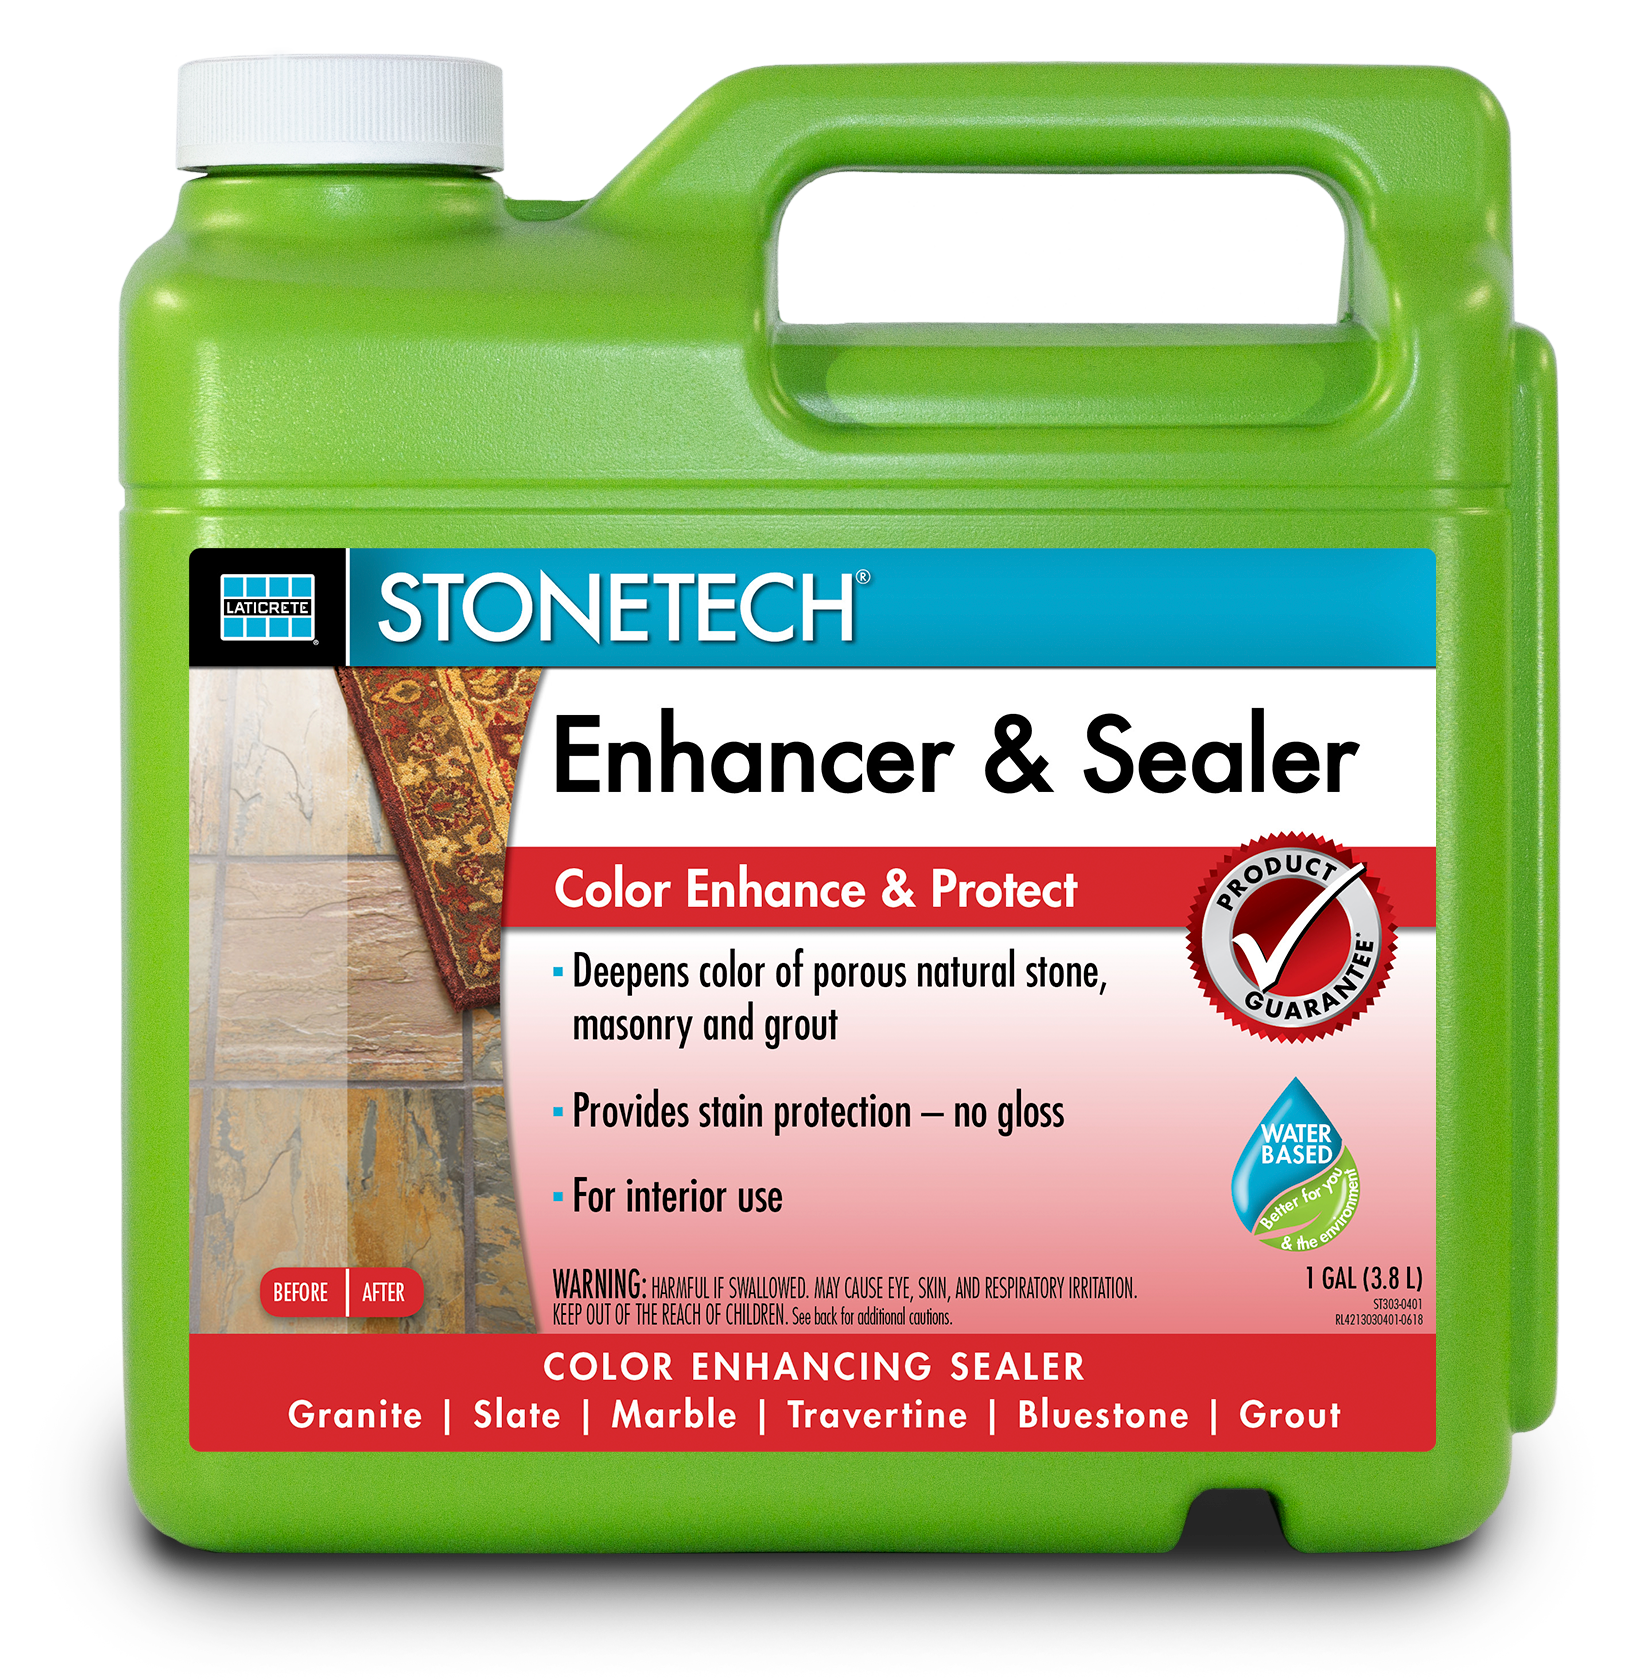 STONETECH® Enhancer Sealer